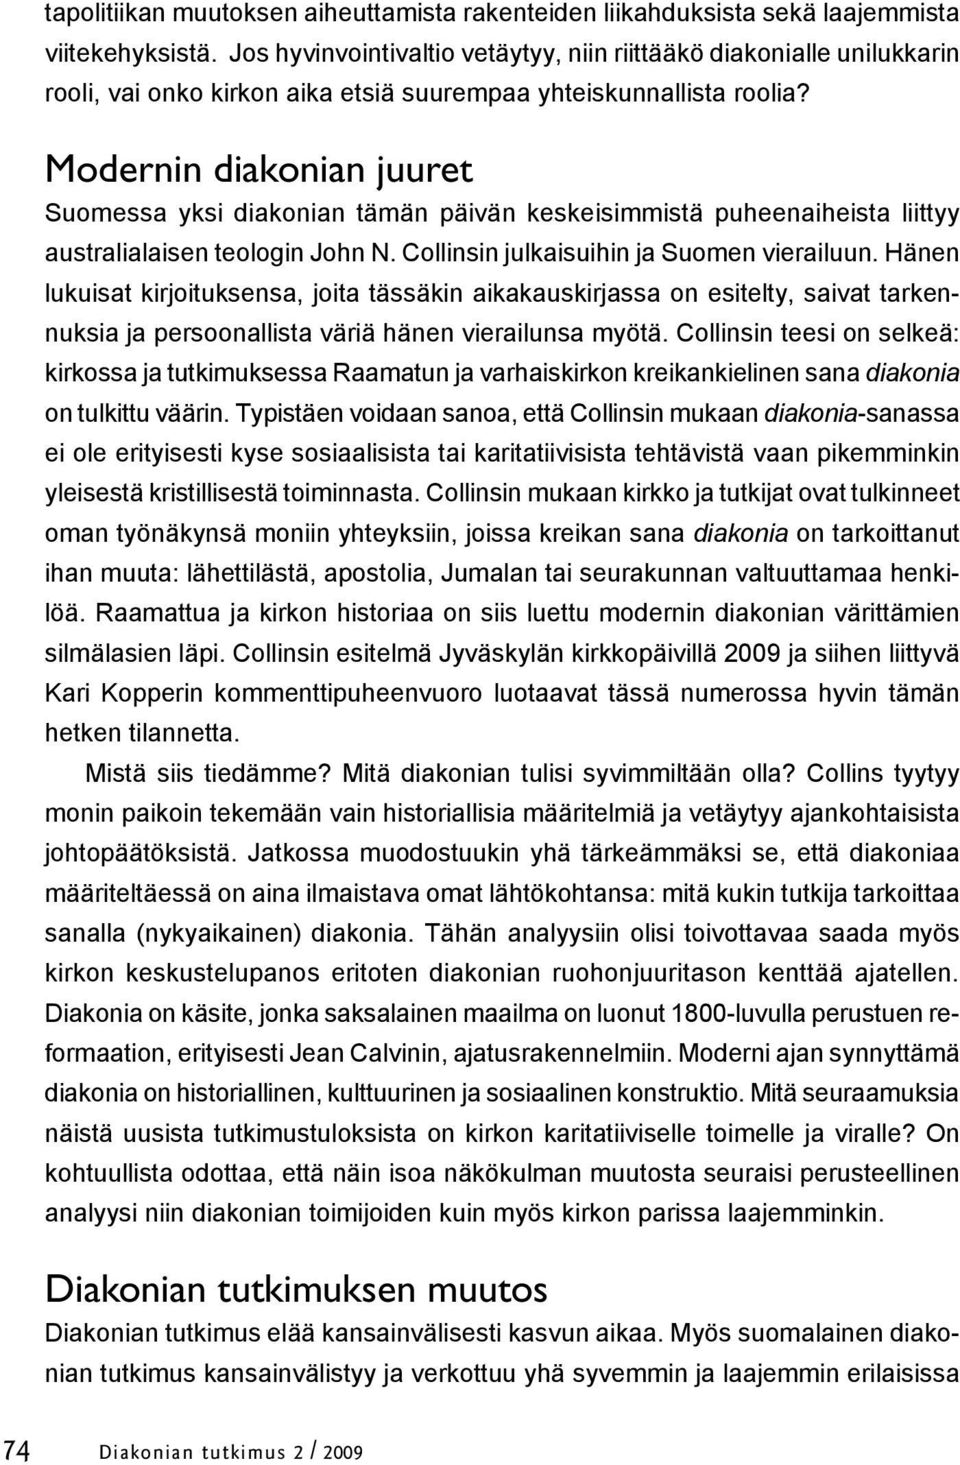 Modernin diakonian juuret Suomessa yksi diakonian tämän päivän keskeisimmistä puheenaiheista liittyy australialaisen teologin John N. Collinsin julkaisuihin ja Suomen vierailuun.